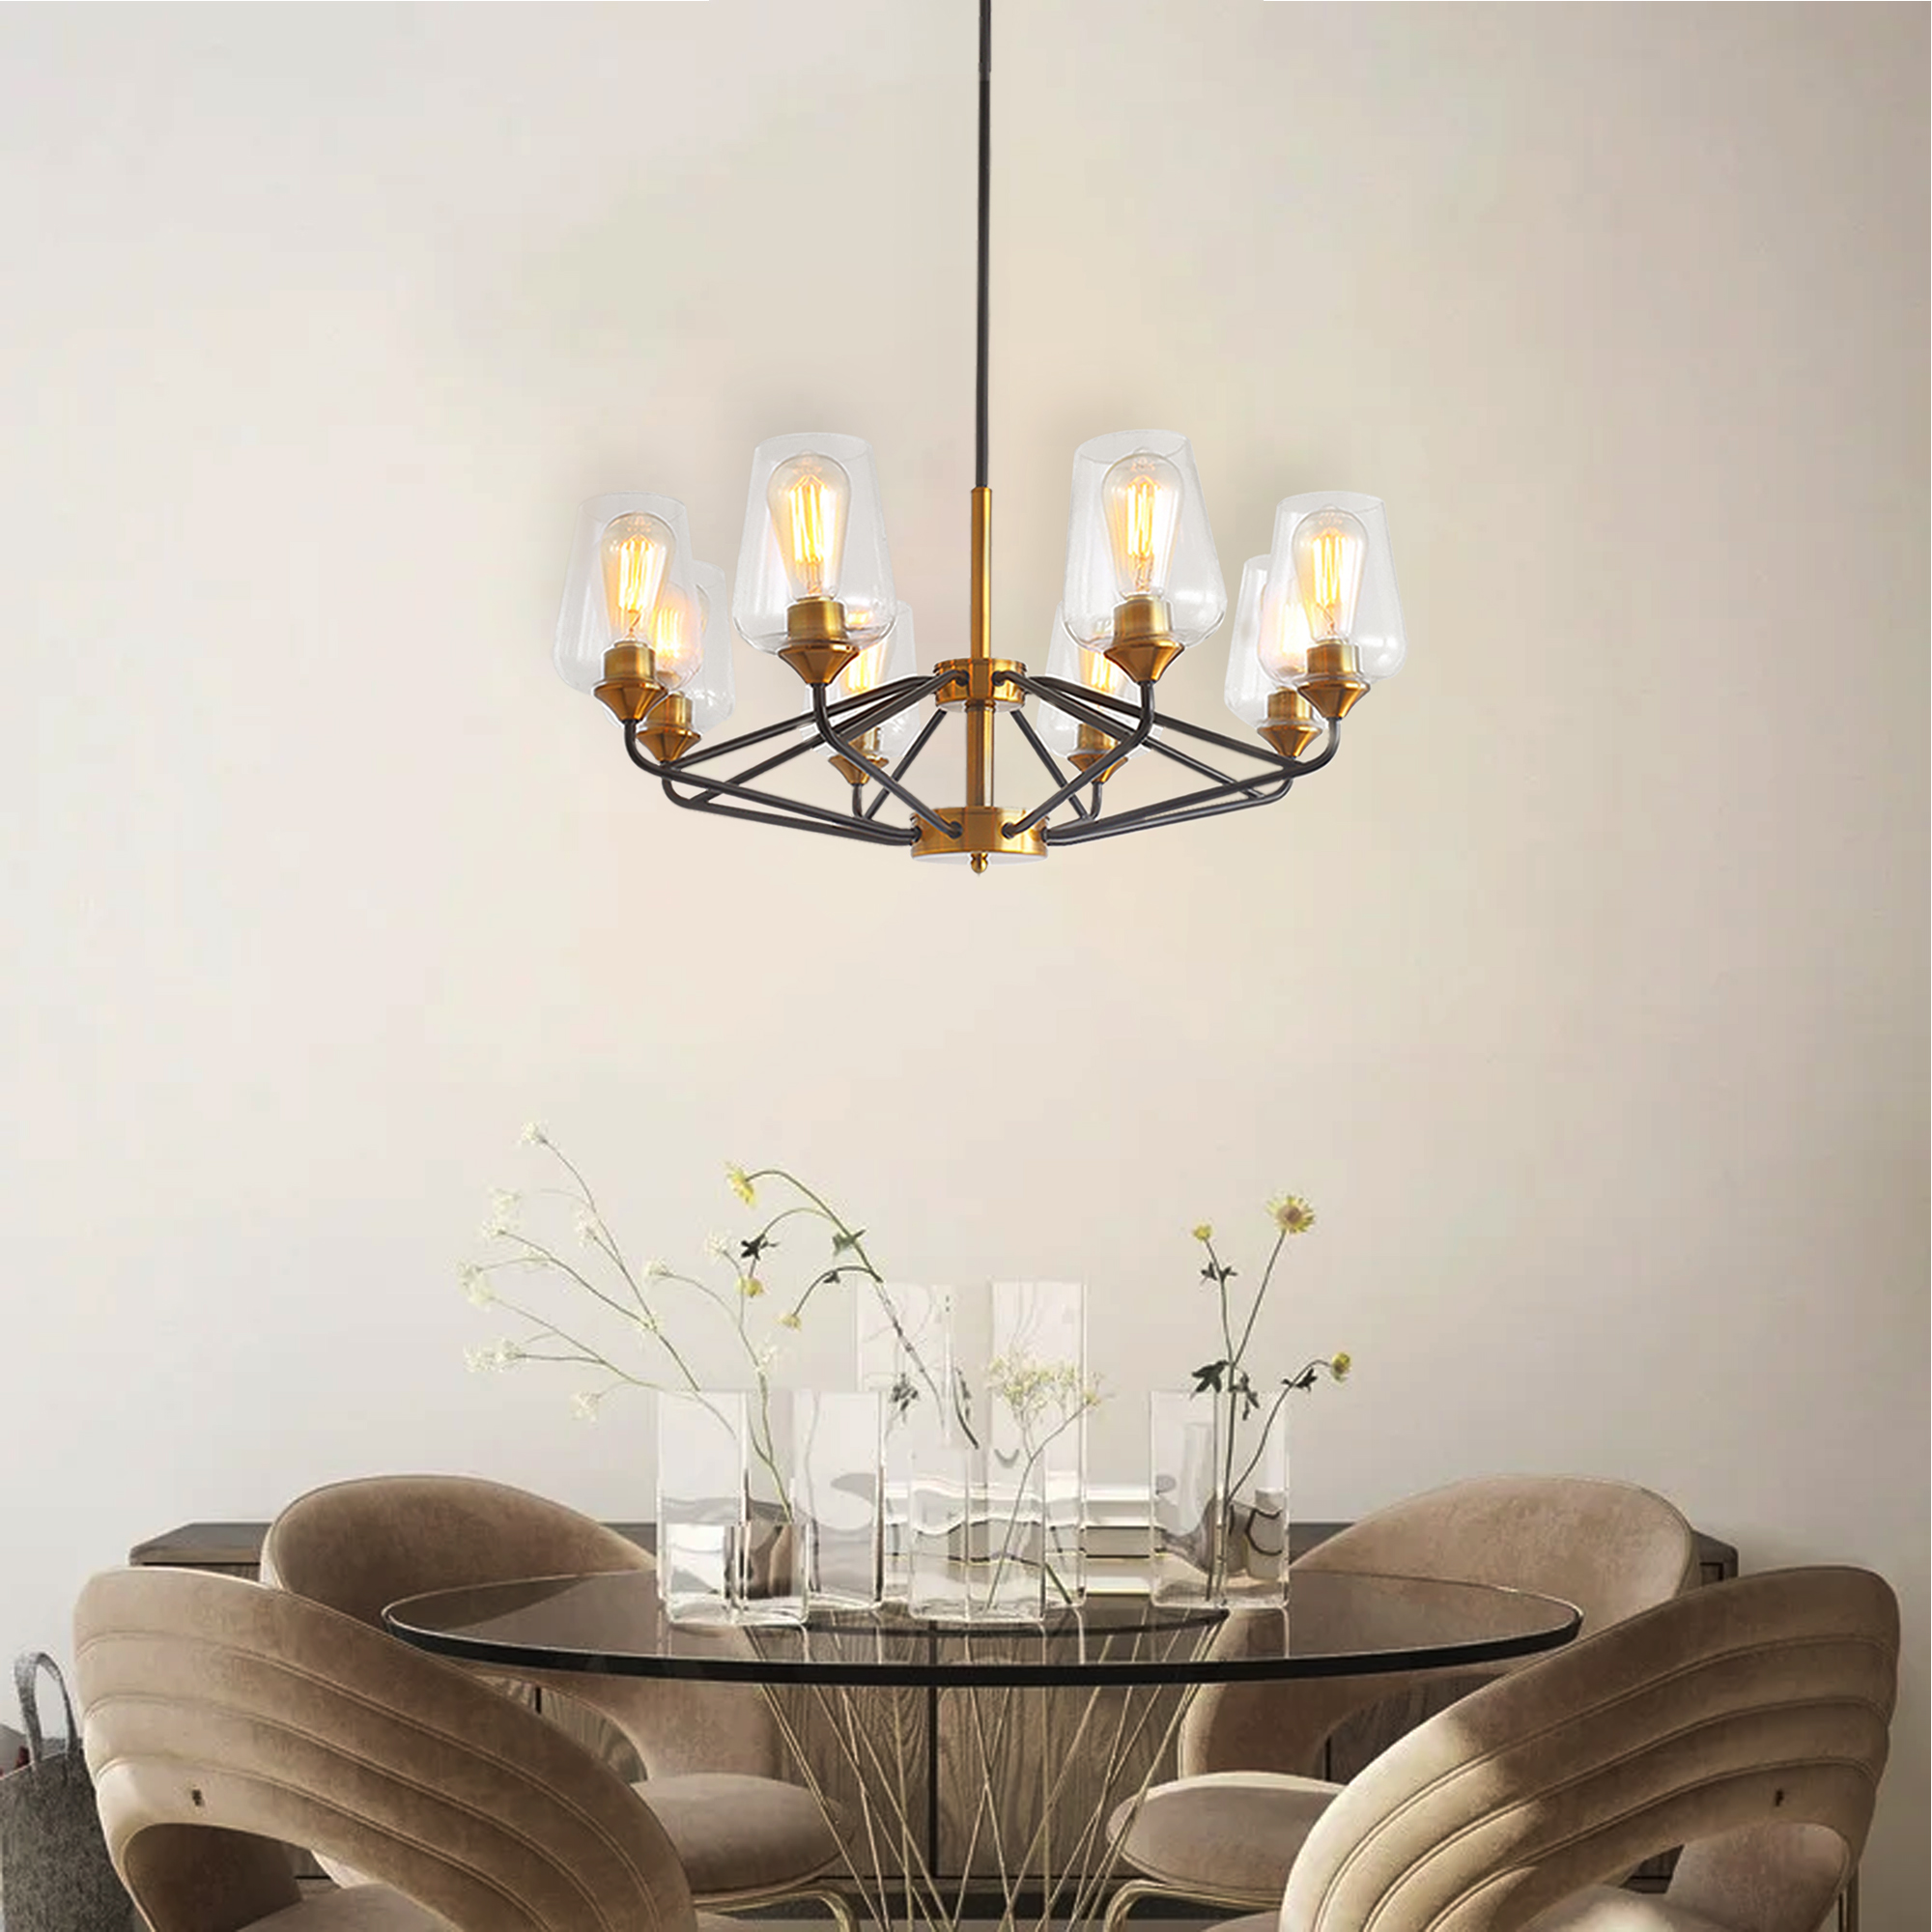 Modern American hanging chandelier -8 bulbs -E26 lamp holder